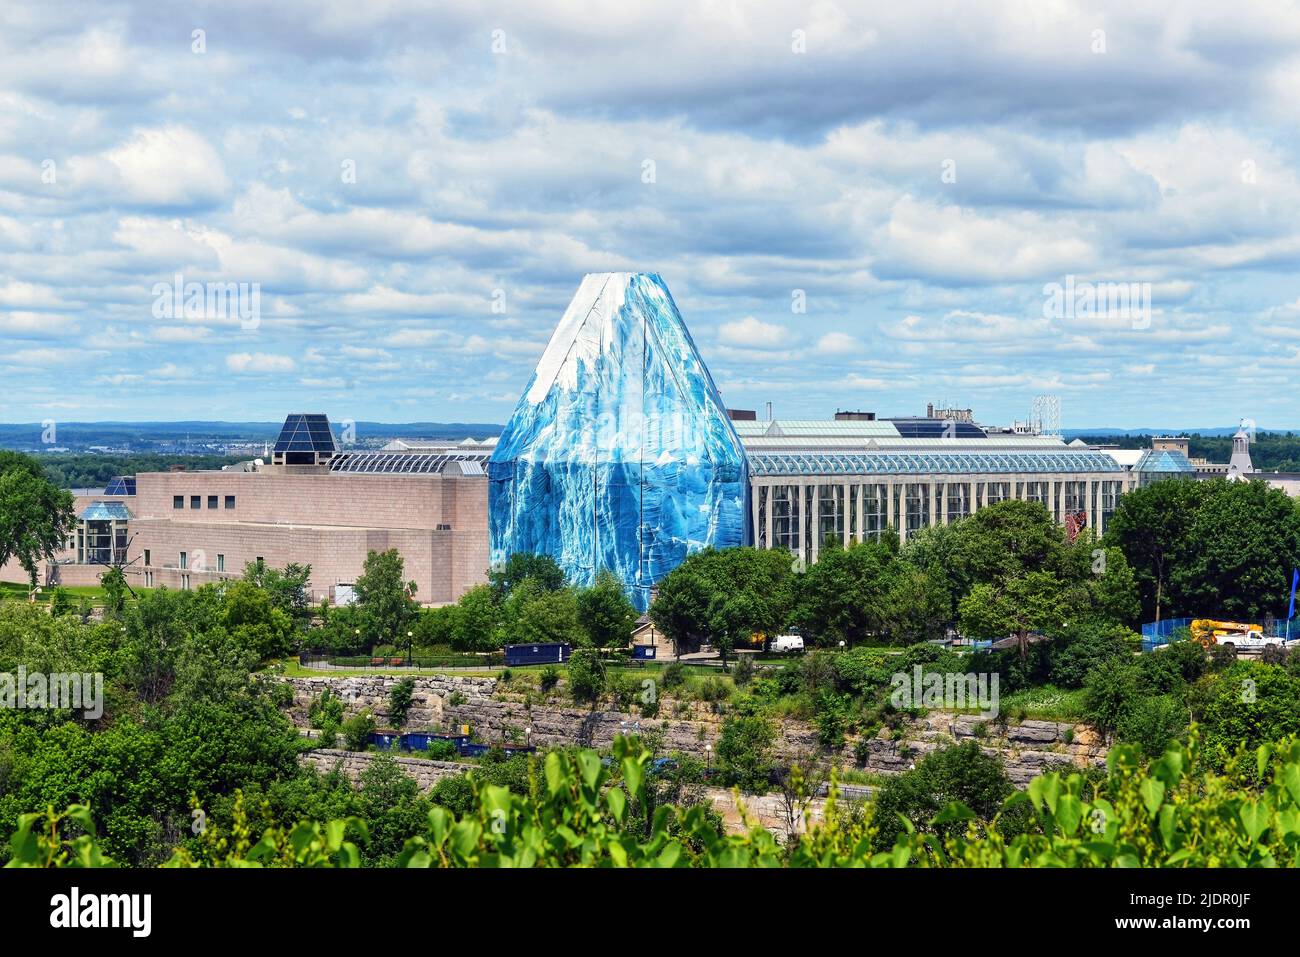 Ottawa, Canada - 30 juin 2013 : le Musée des beaux-arts du Canada avec la coupole de verre à trois niveaux temporairement recouverte d'une image d'un iceberg Banque D'Images